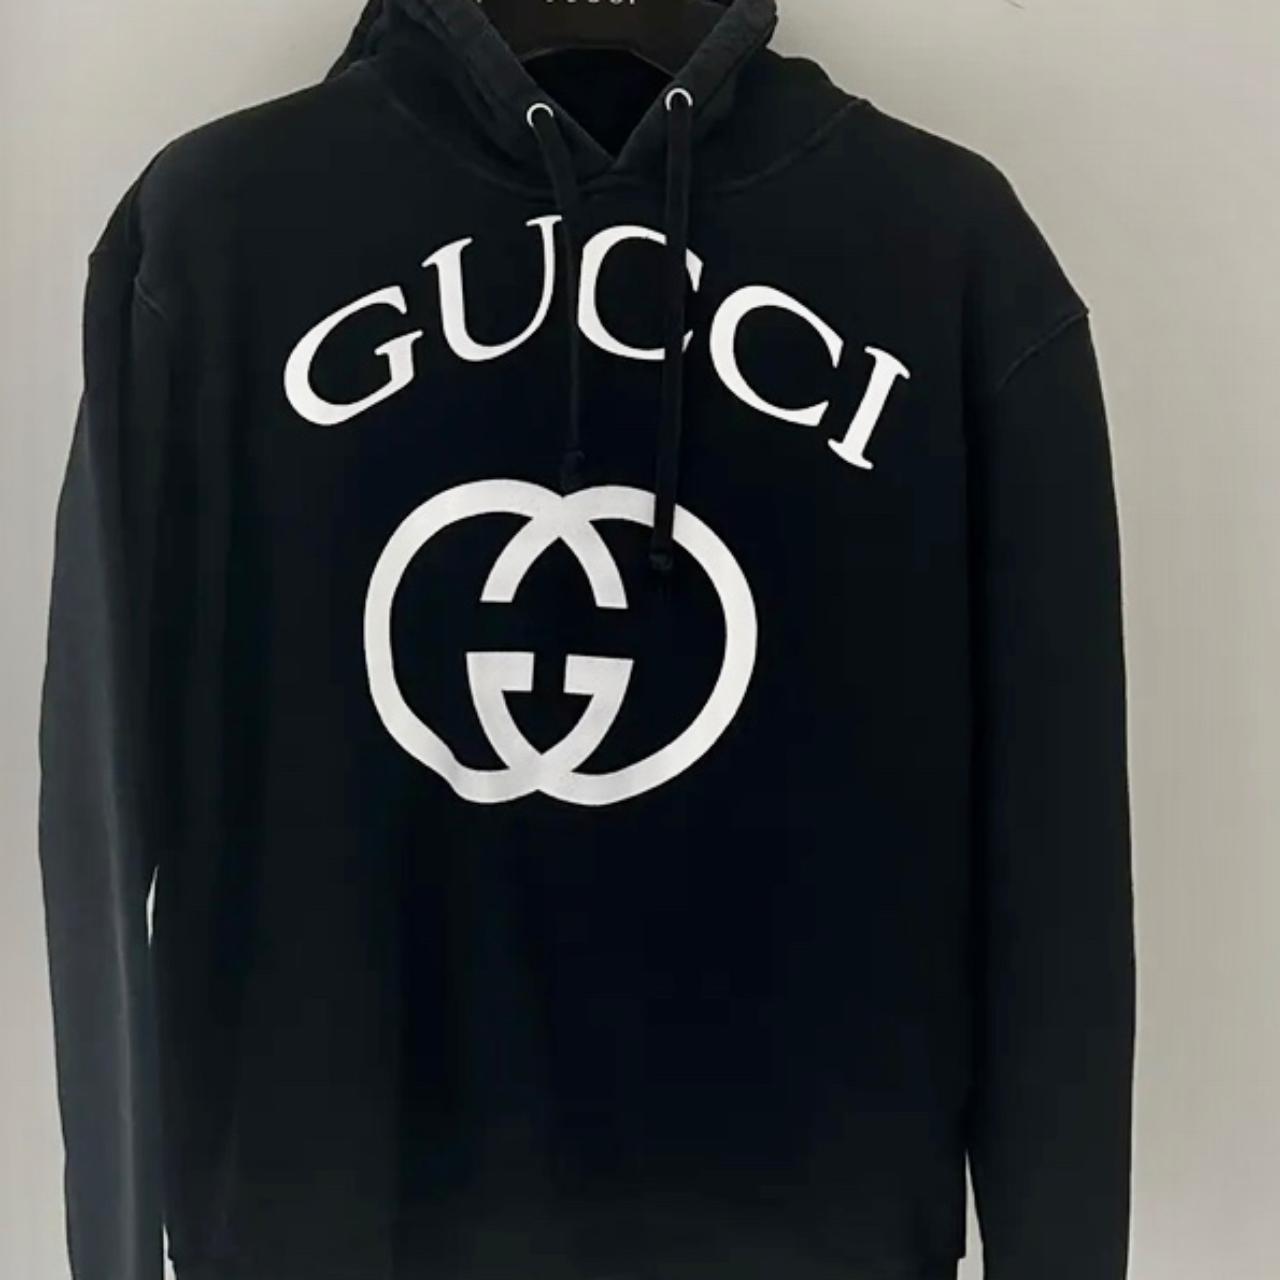 REAL Authentic Gucci Hoody / Hoodie / Knitwear - RRP... - Depop